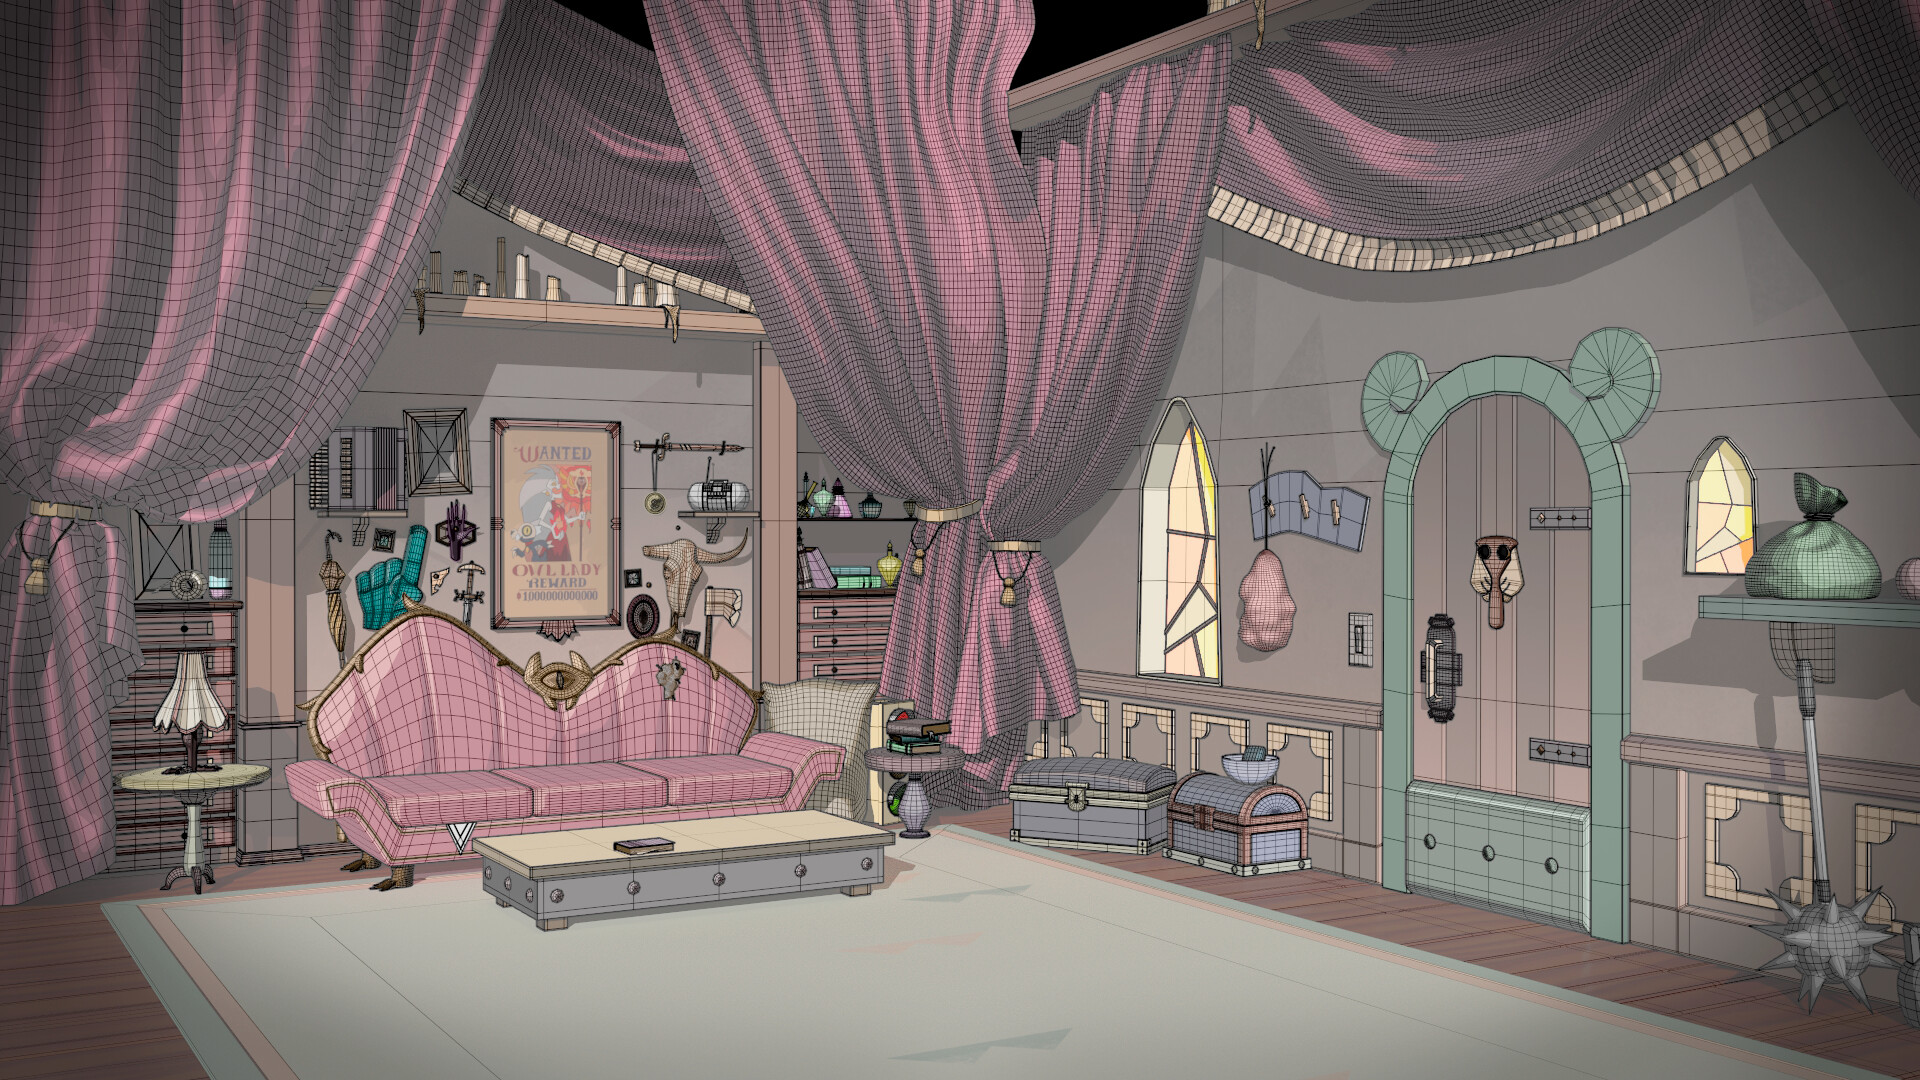 ArtStation - The Owl House - Luz's room Soft colour palette